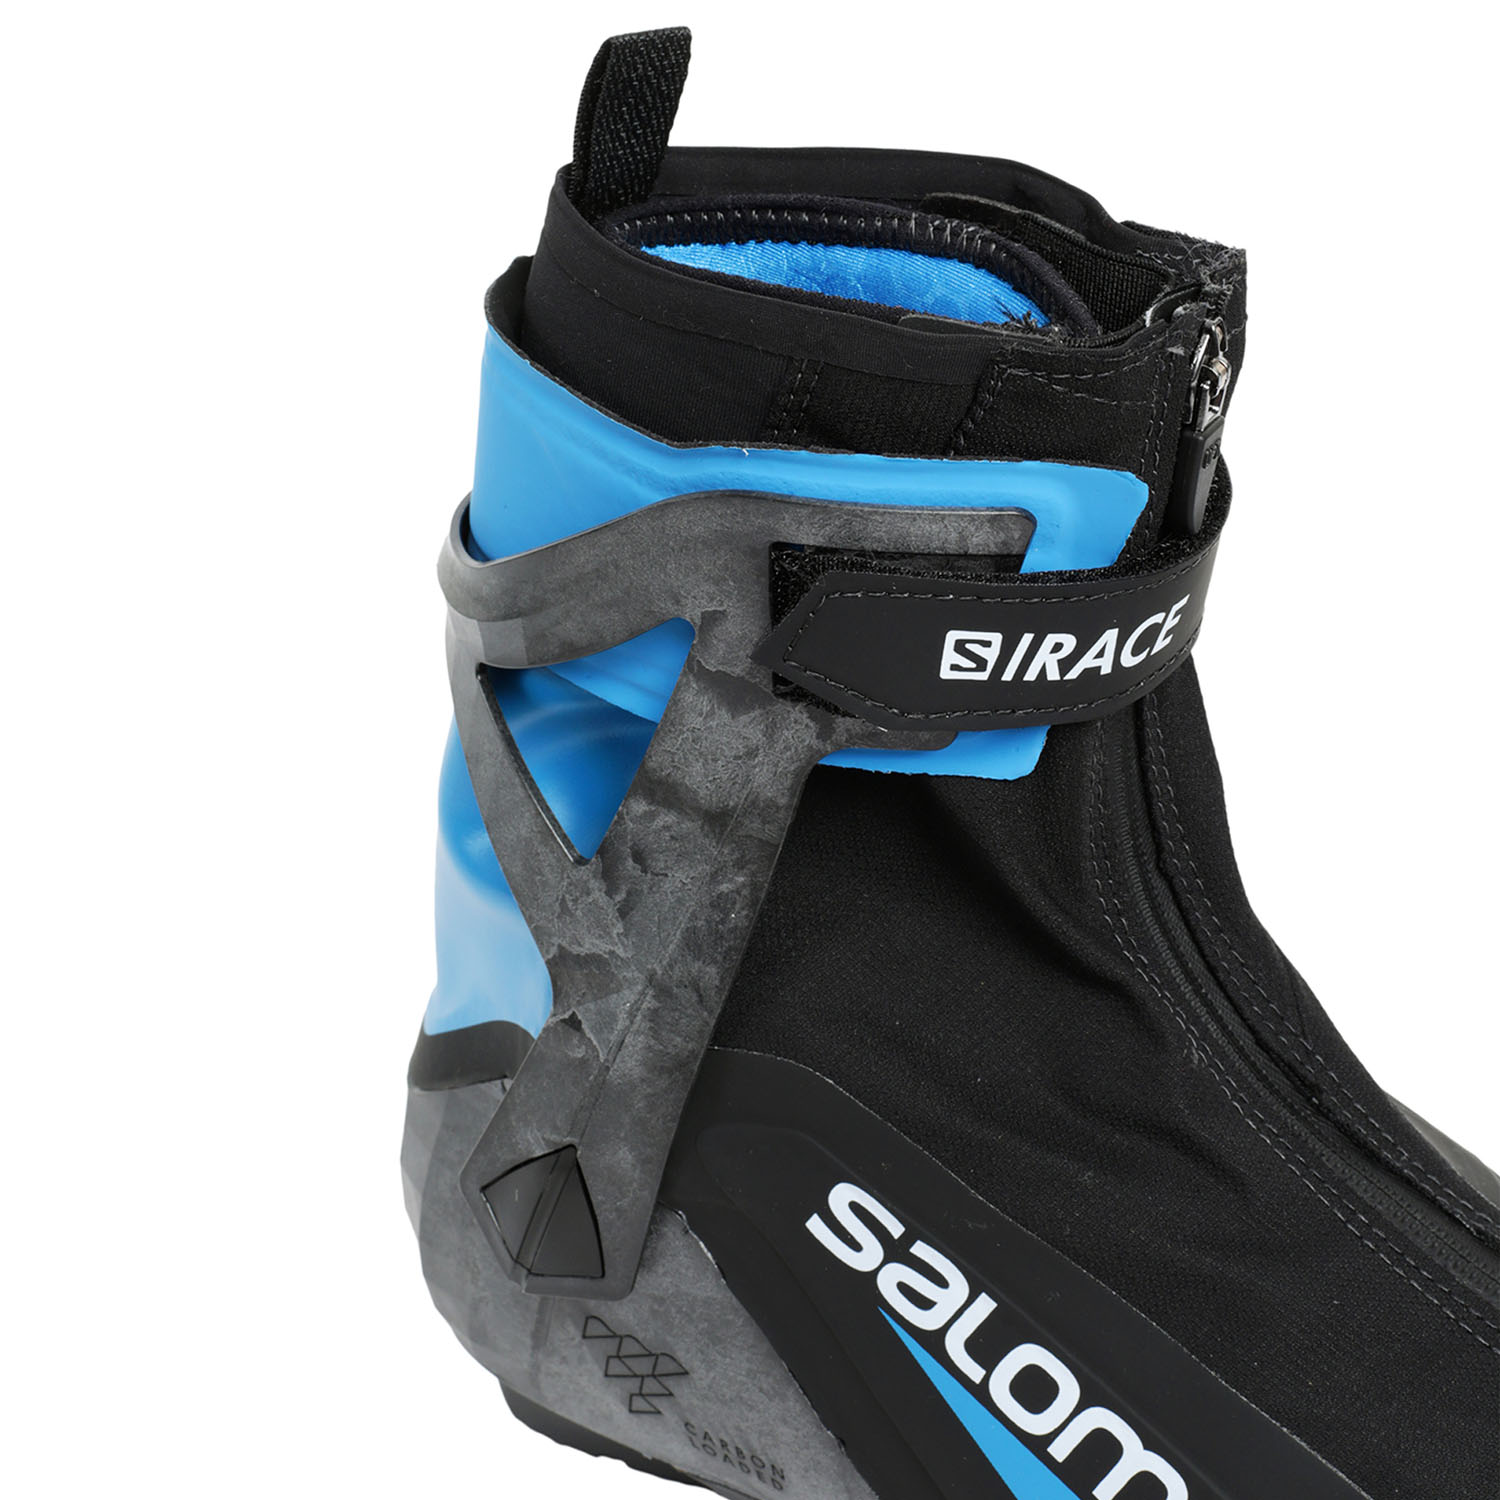 Лыжные ботинки SALOMON S/Race Carbon Skate Prolink Black/Blue